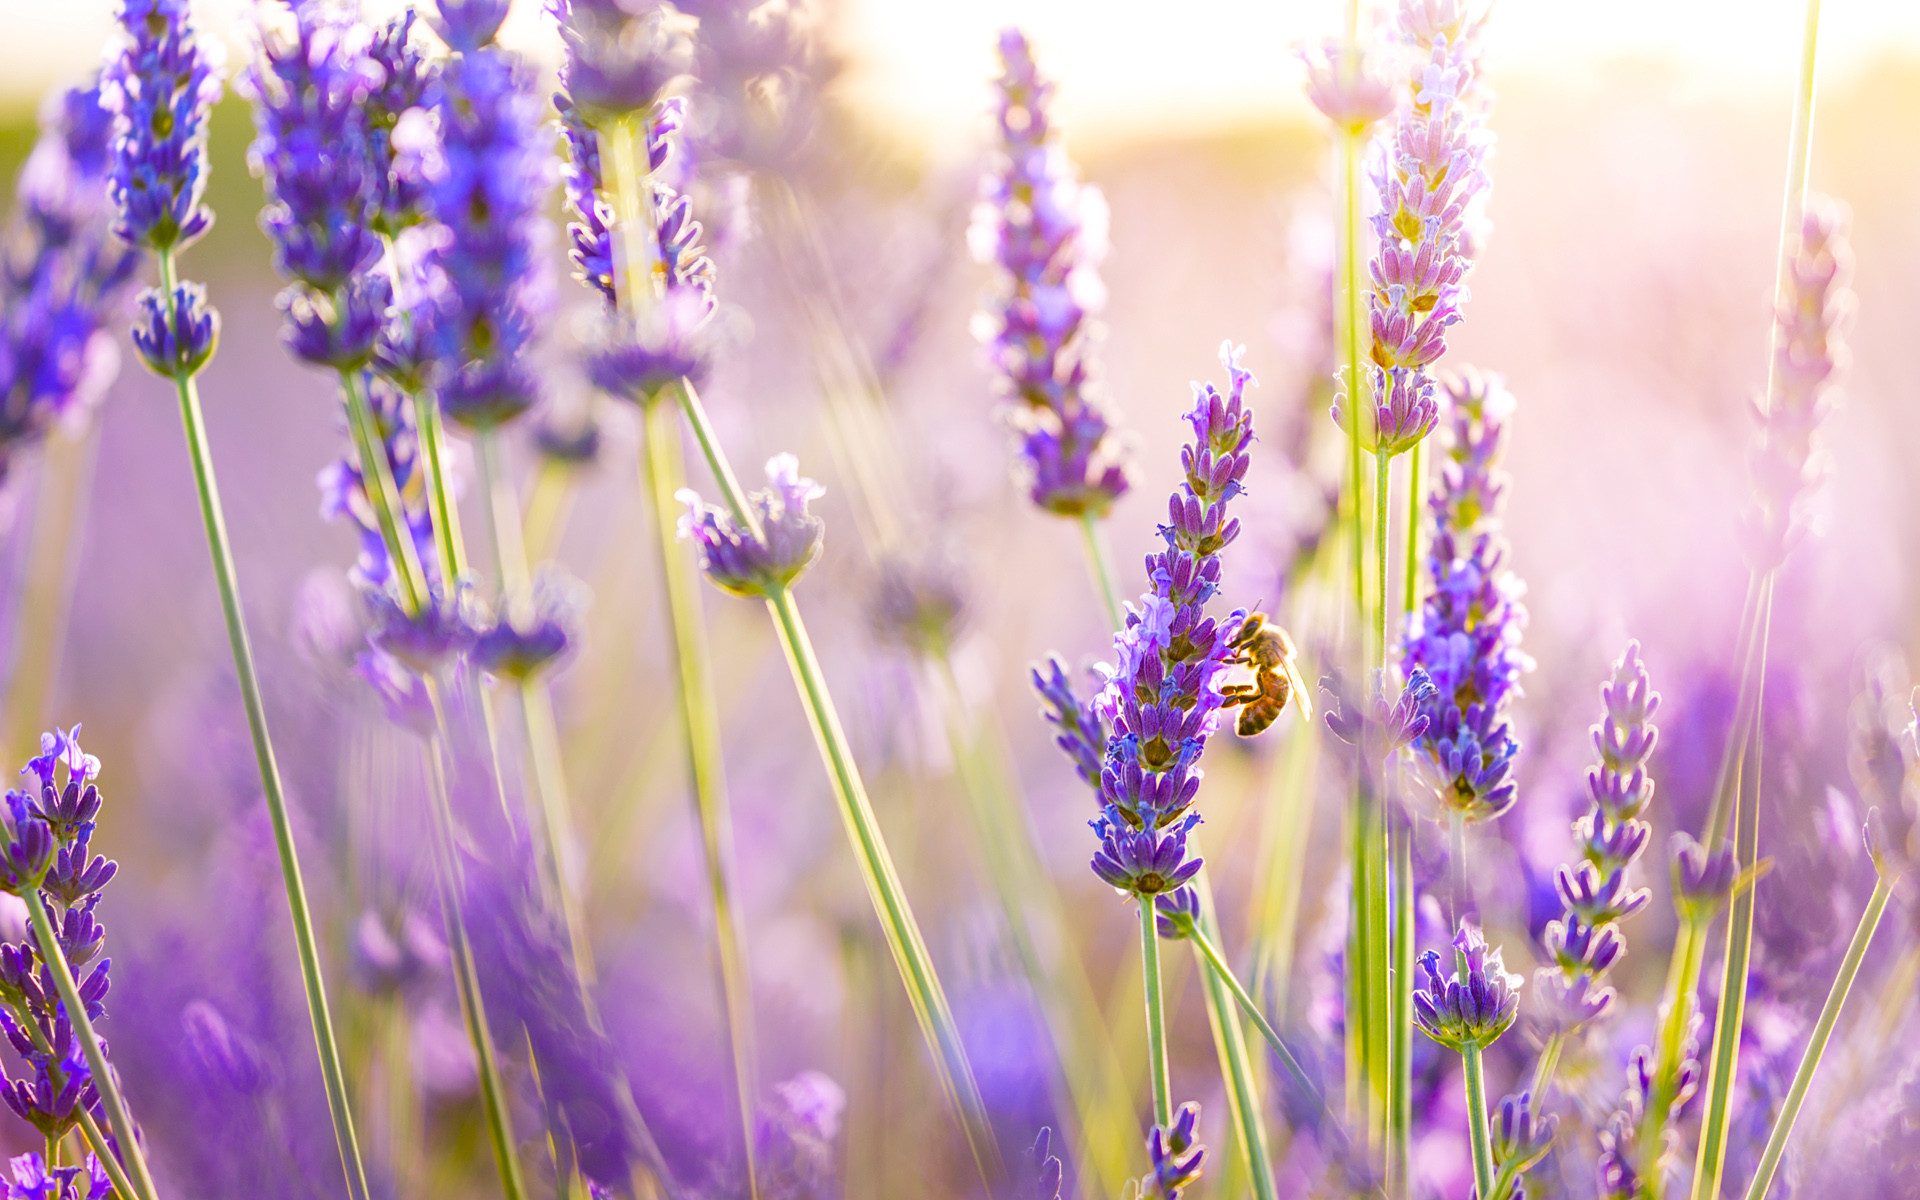 Hình nền điện thoại hoa lavender sẽ giúp bạn khơi gợi được niềm đam mê về thiên nhiên và ngời sáng với vẻ đẹp tuyệt vời của những cánh hoa oải hương. Sự kết hợp giữa bản sắc thiên nhiên và sự hiện đại của công nghệ sẽ tạo nên một phong cách độc đáo cho bạn.